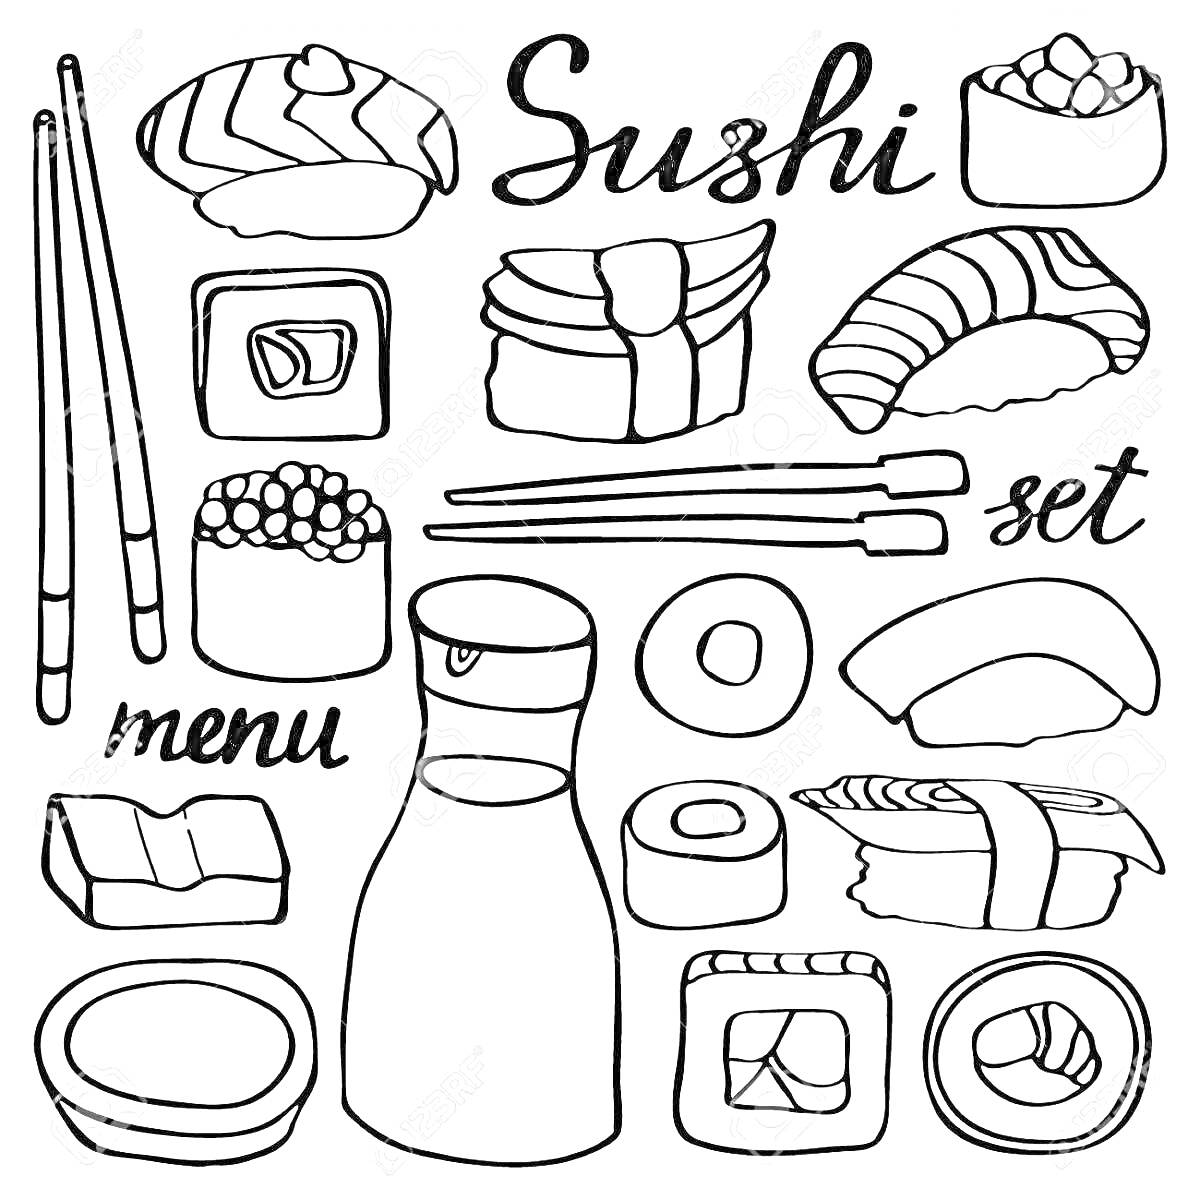 Раскраска Набор суши, палочки для еды, соусник, разные виды роллов и суши, соусник, доска, графин для соевого соуса, миска